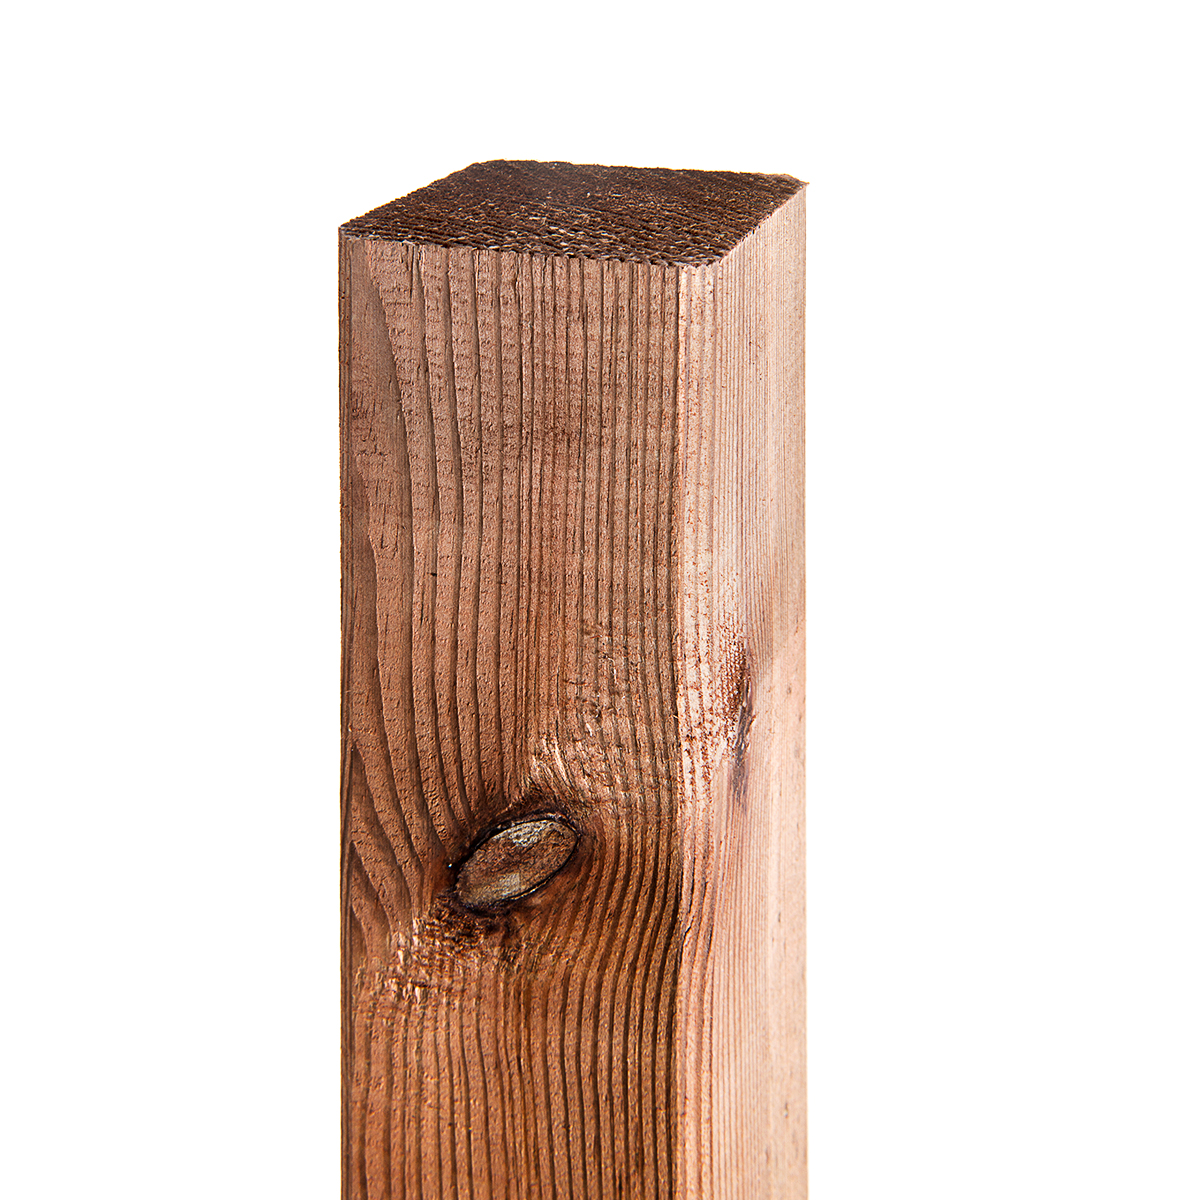 Poteaux en bois robustes de 1m, 1,5m et 1,8m de hauteur et 7cm x 7cm pour des applications variées